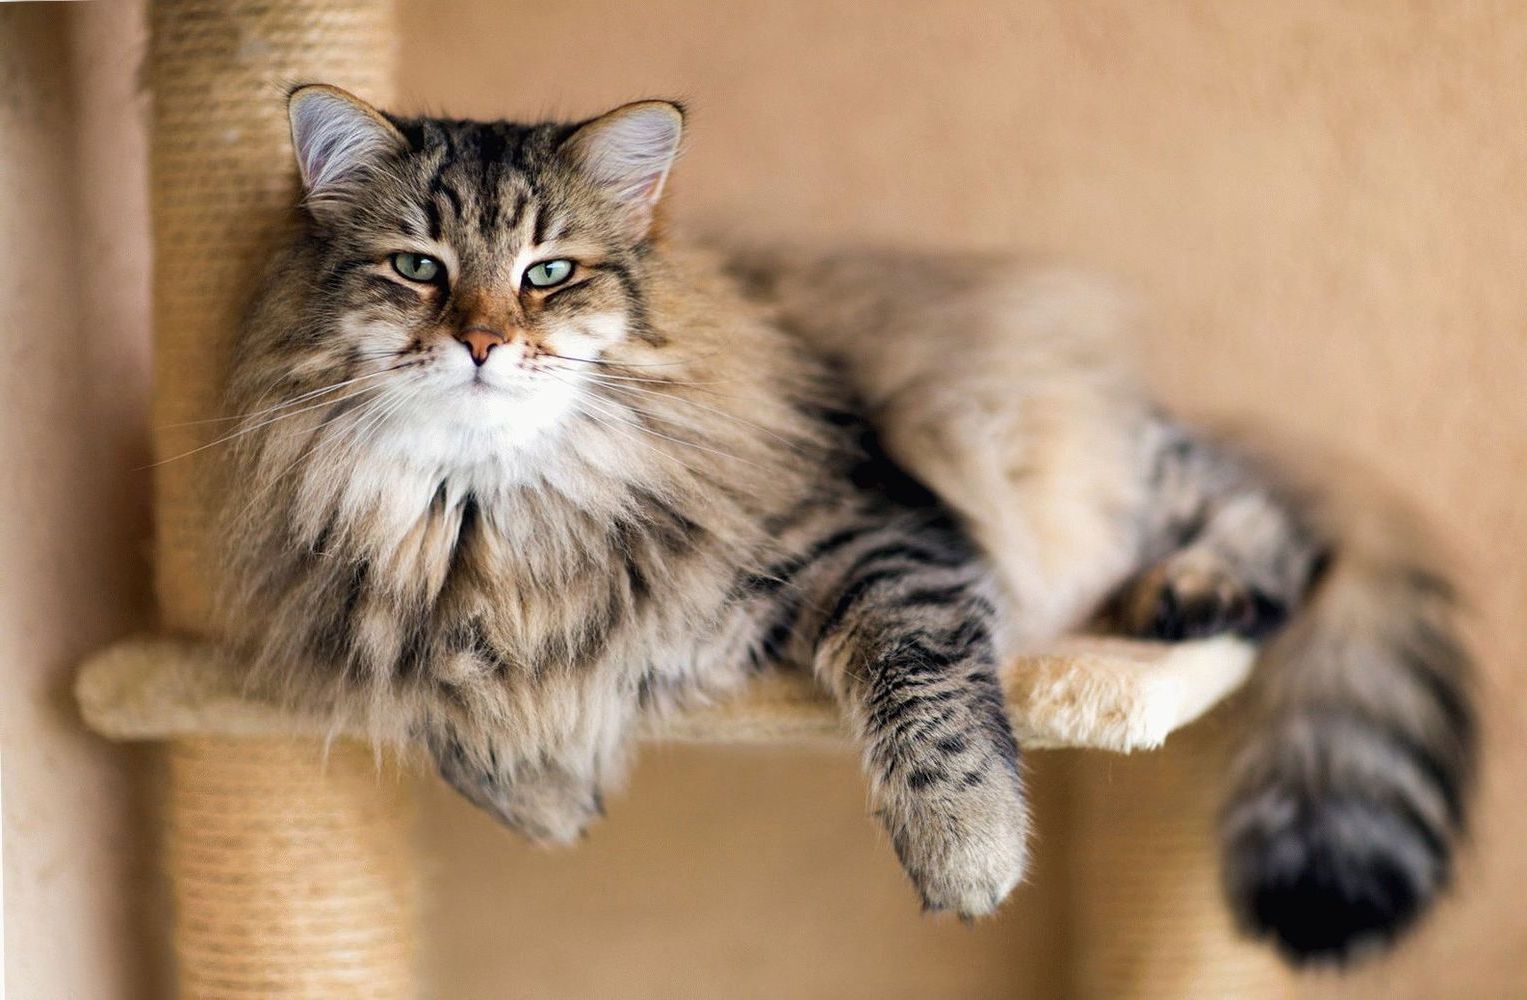 10 лет коту или кошке по человеческим меркам соответствуют солидному предпенсионному возрасту.